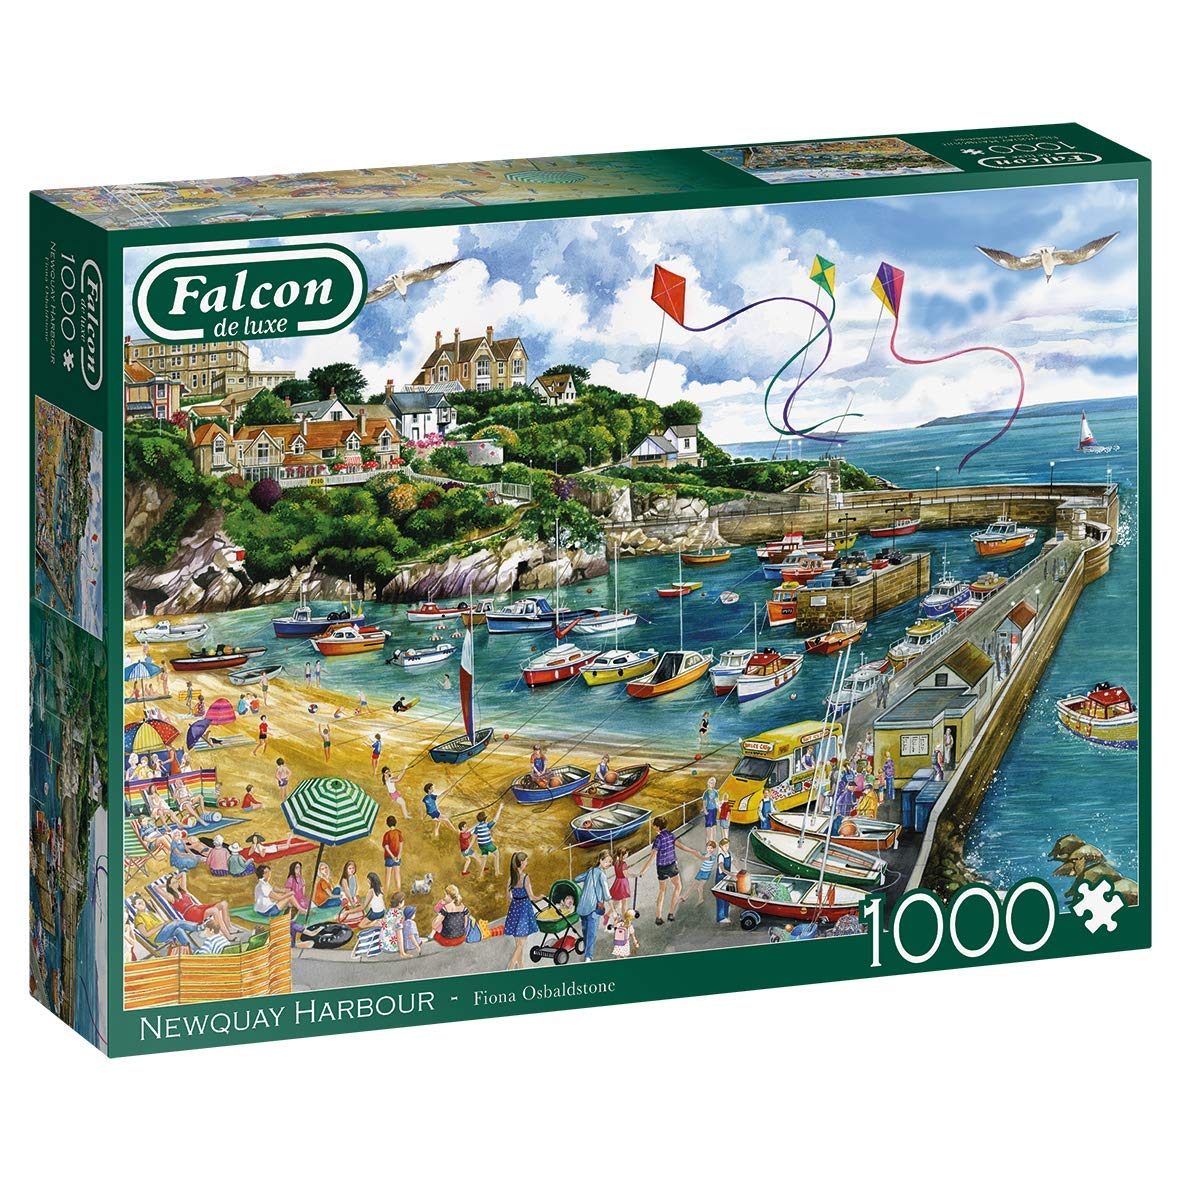 Falcon De Luxe - Newquay Harbour - 1000 Piece Jigsaw Puzzle